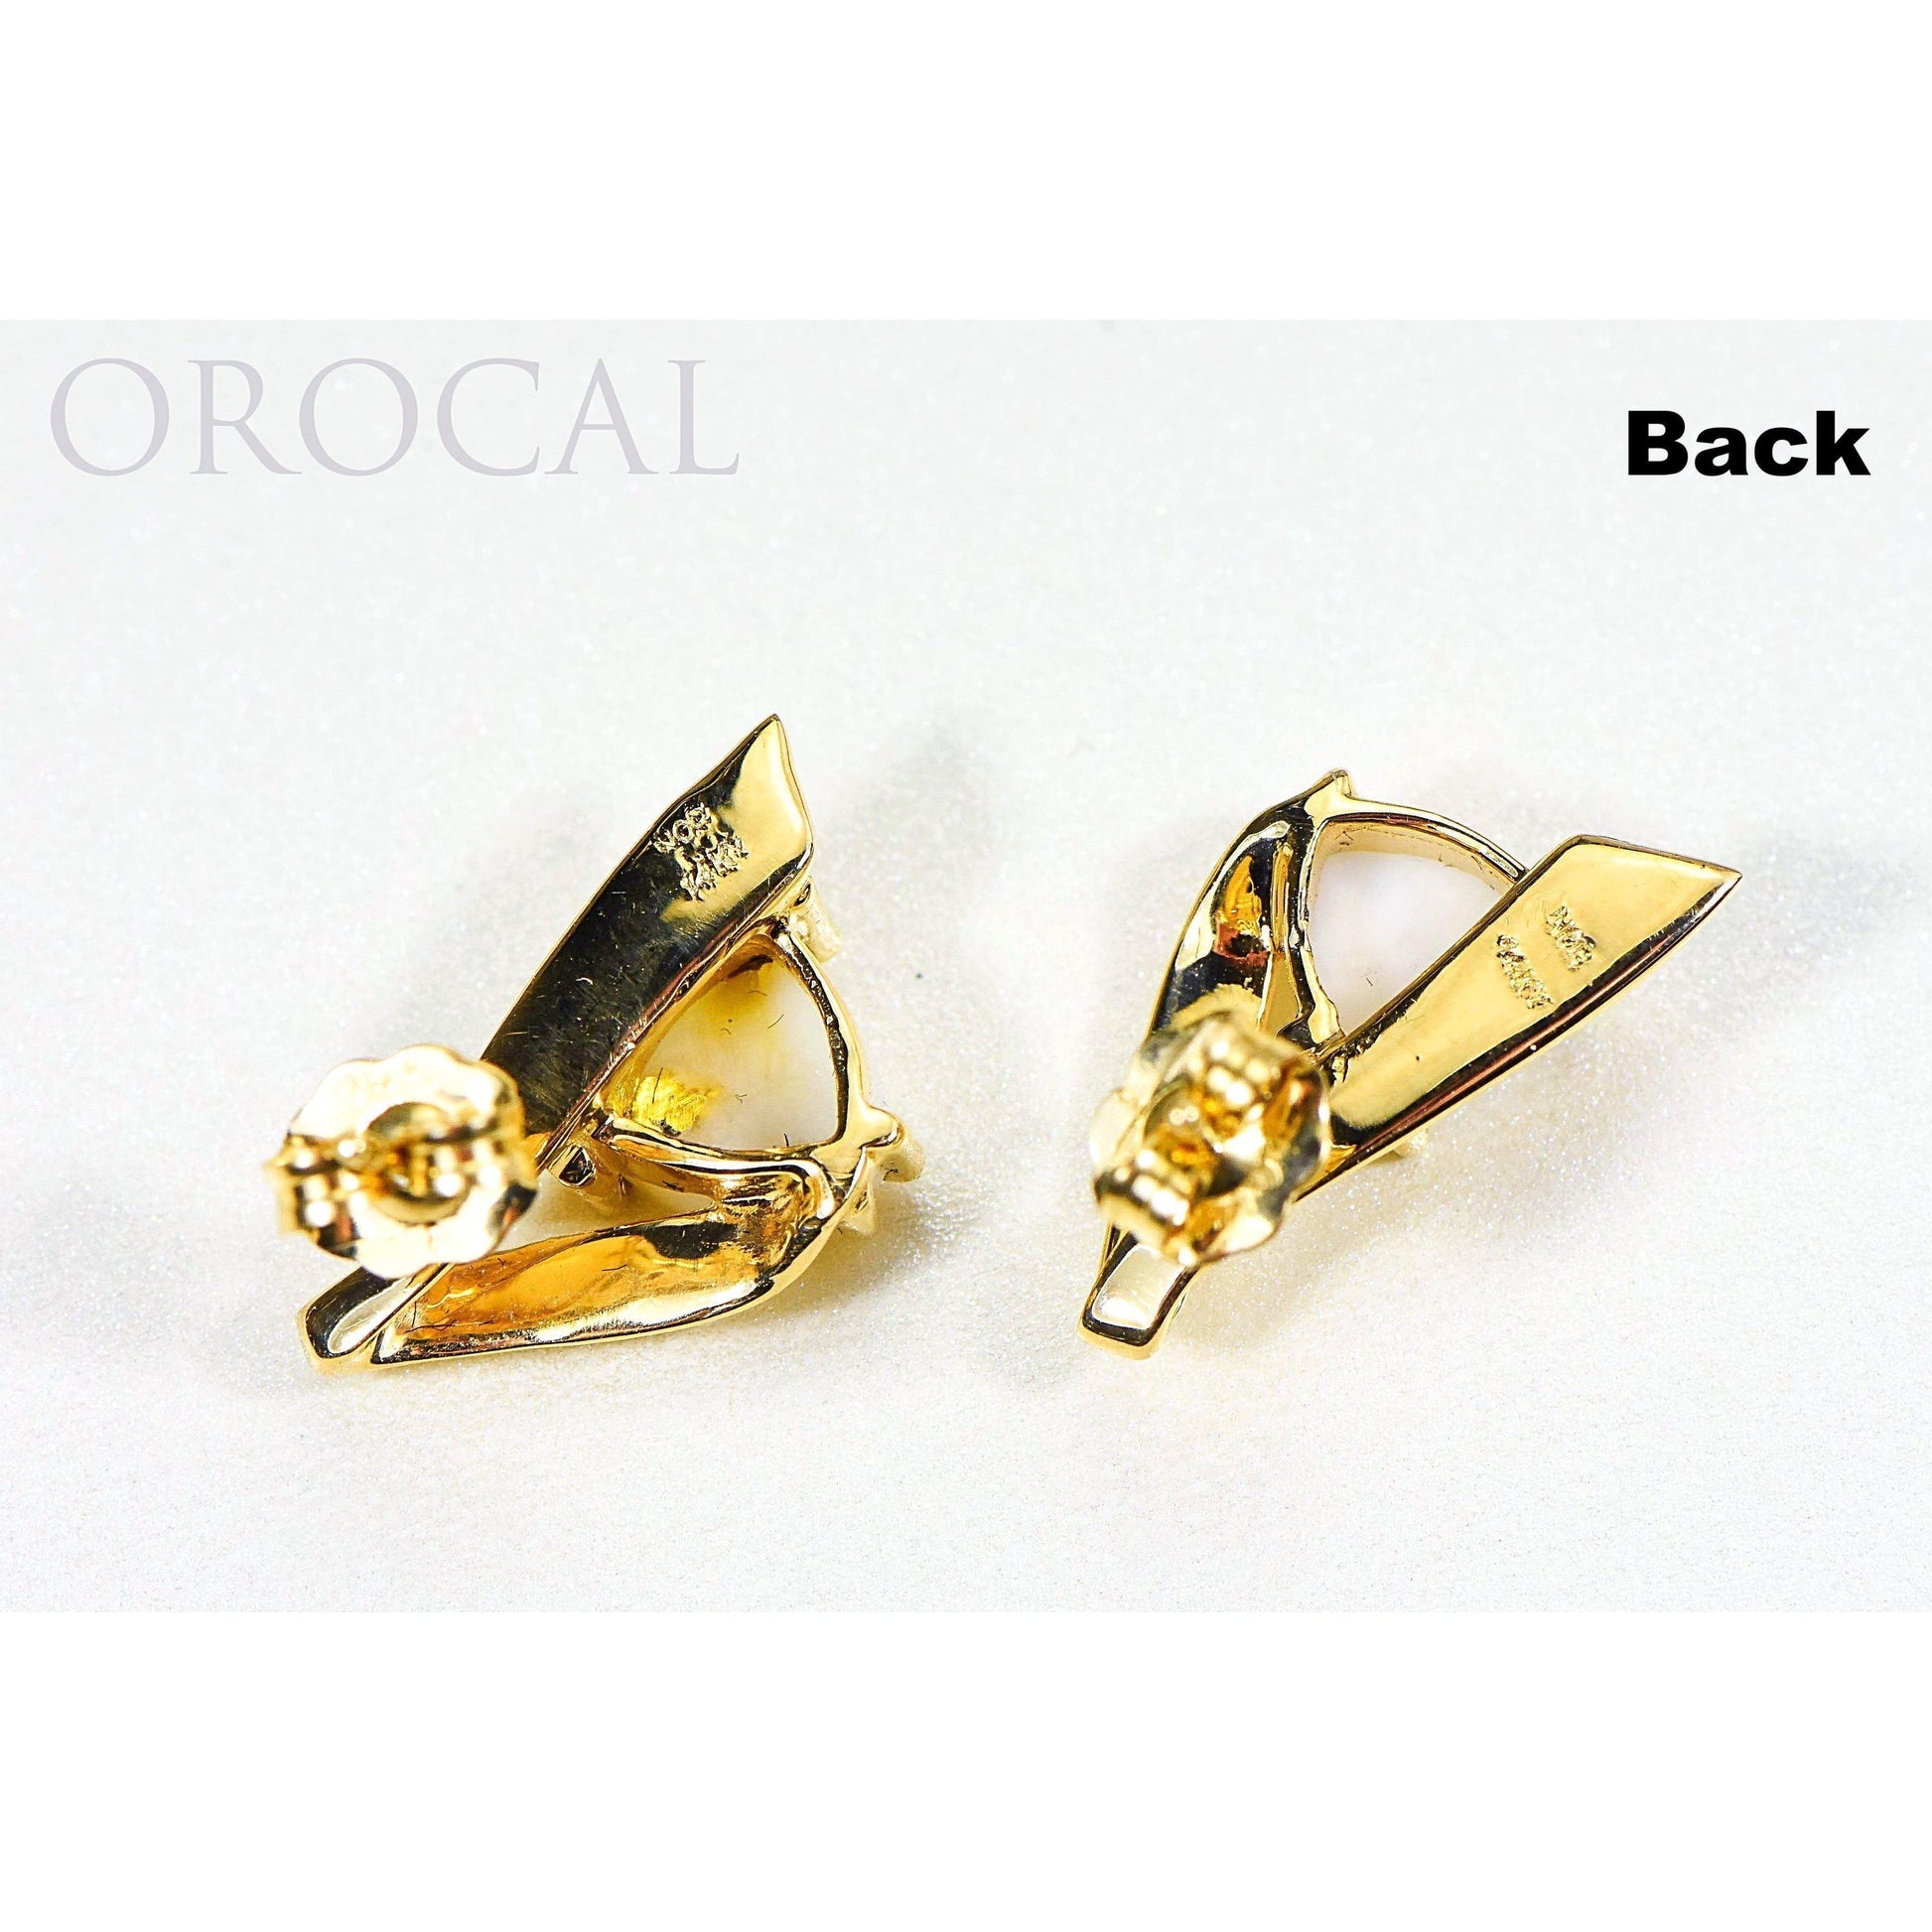 Orocal Gold Quartz Earrings EDL77Q-Destination Gold Detectors